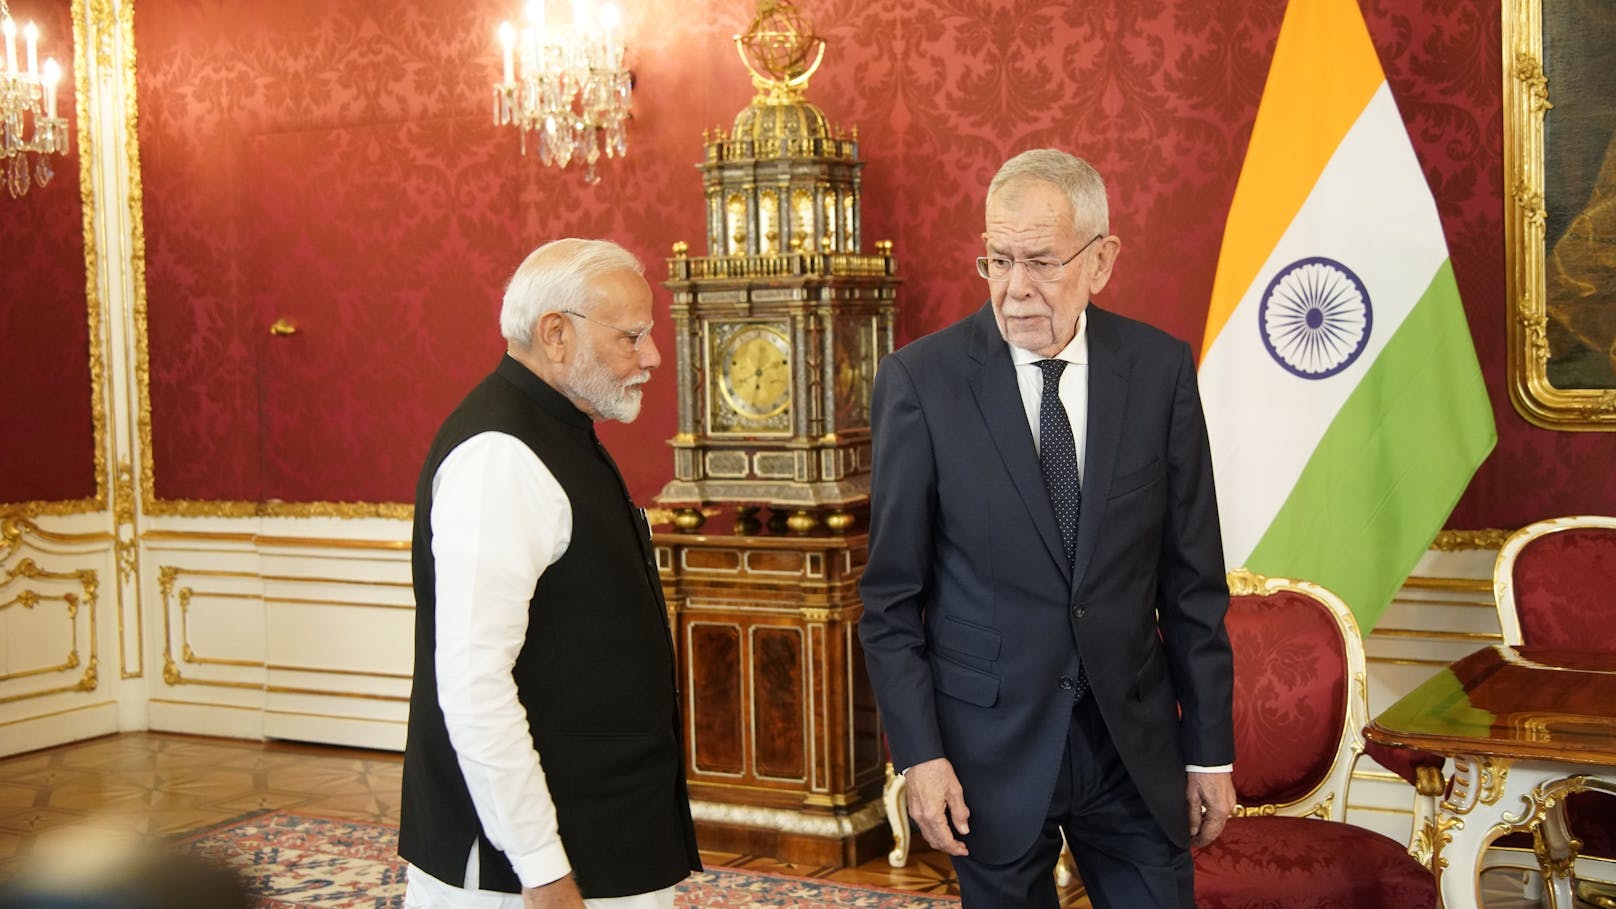 Bundespräsident Alexander Van der Bellen führte Modi kurz durch die Hofburg.